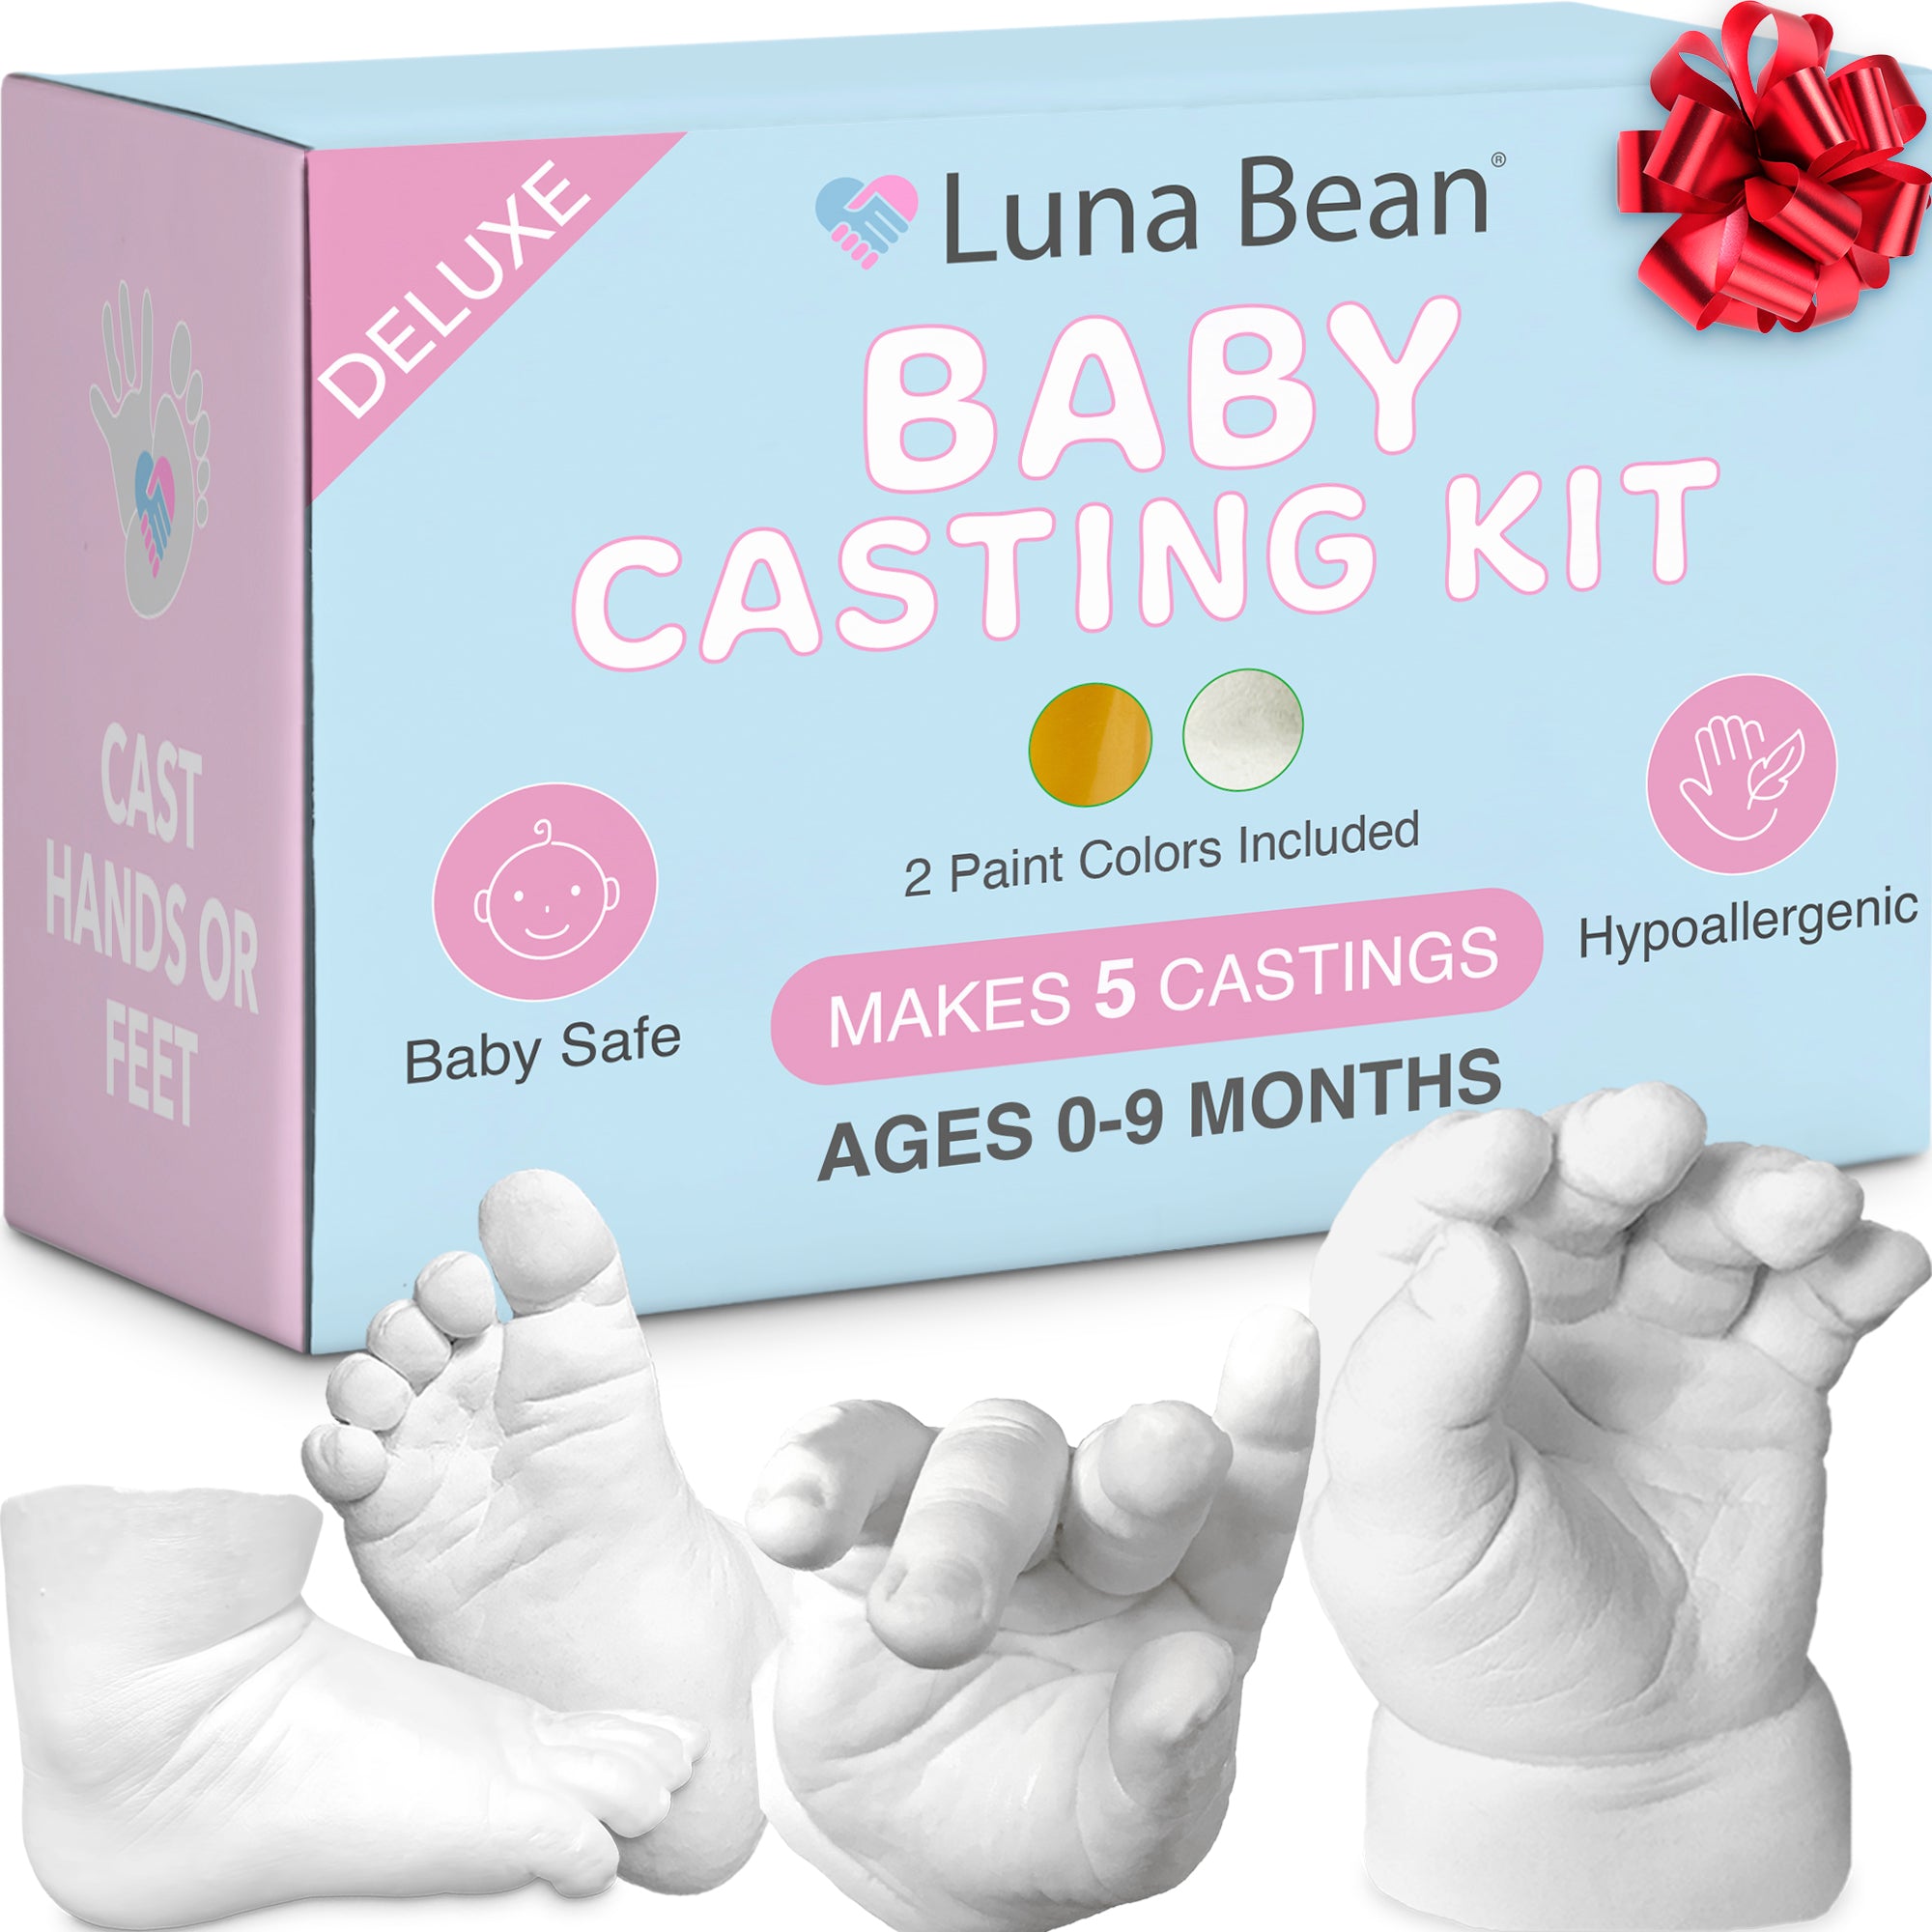 Hand Casting Kit